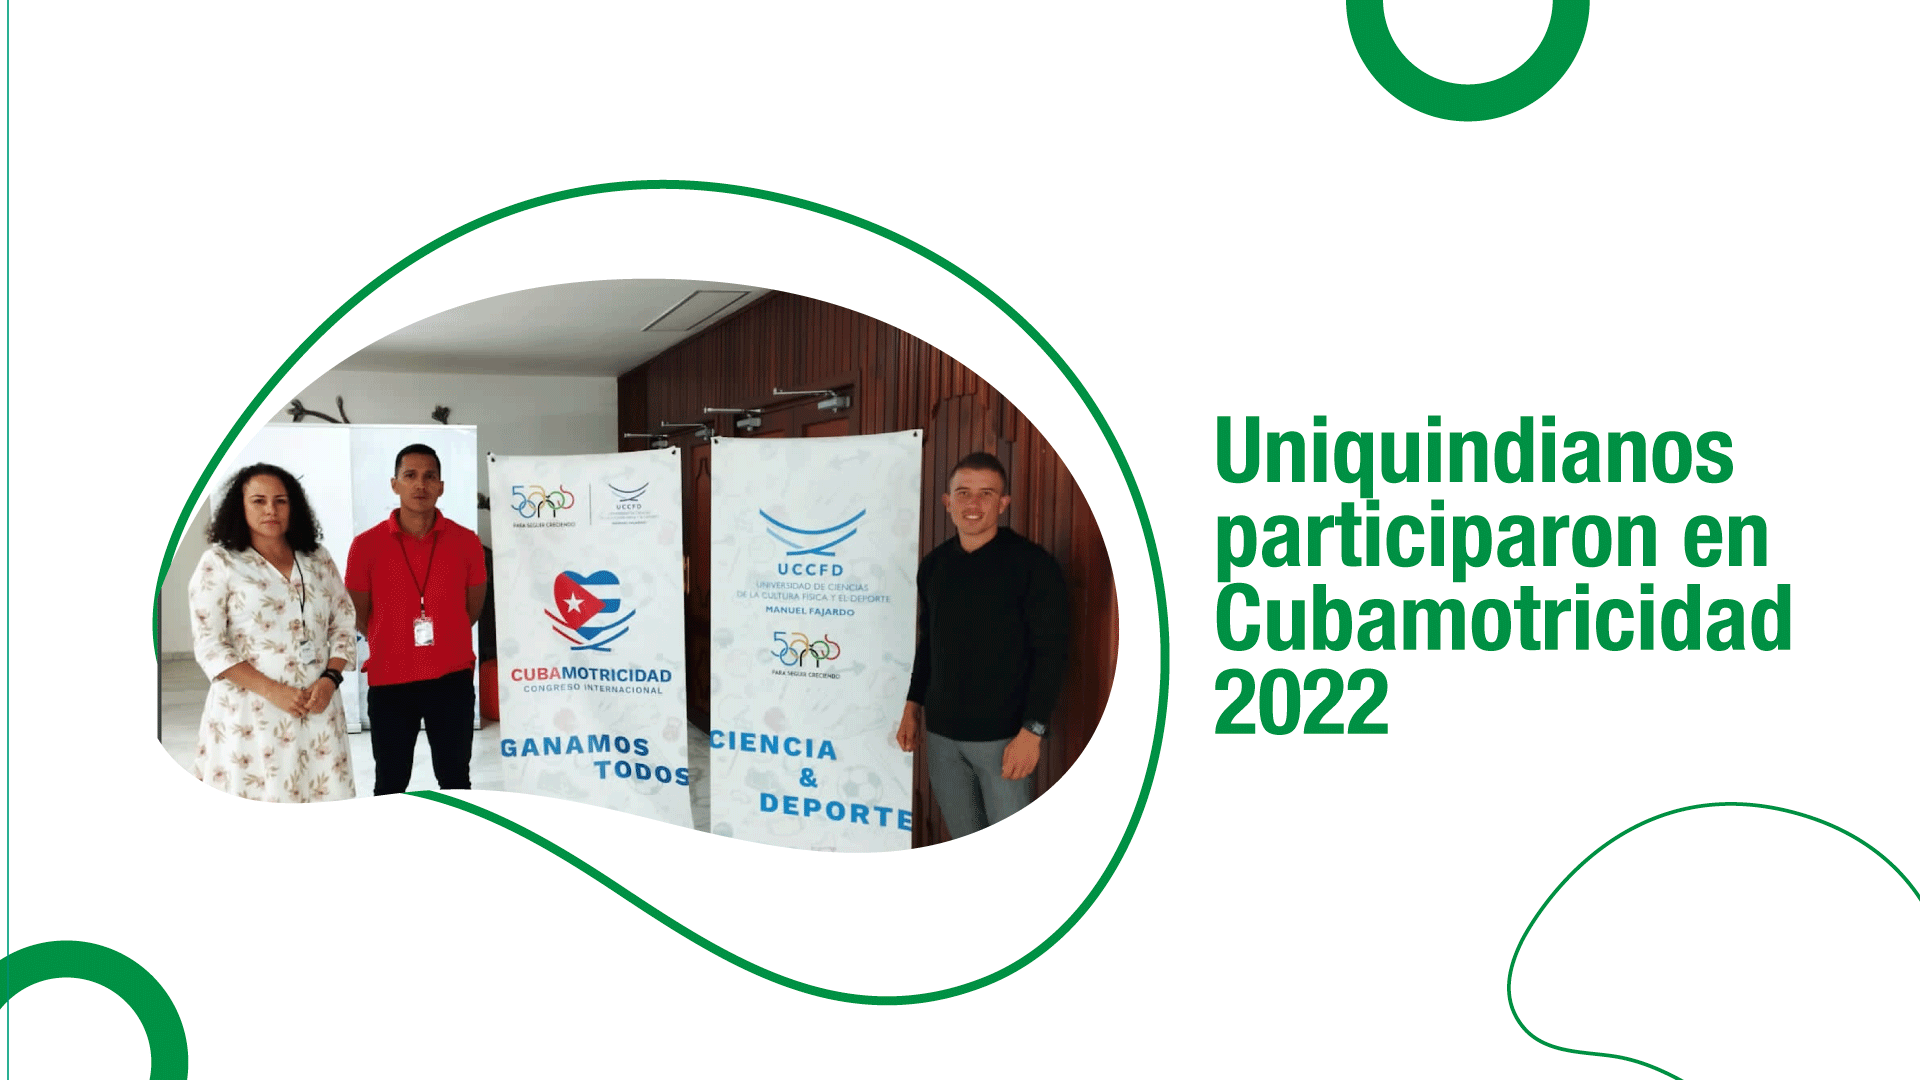 Uniquindianos participaron en Cubamotricidad 2022